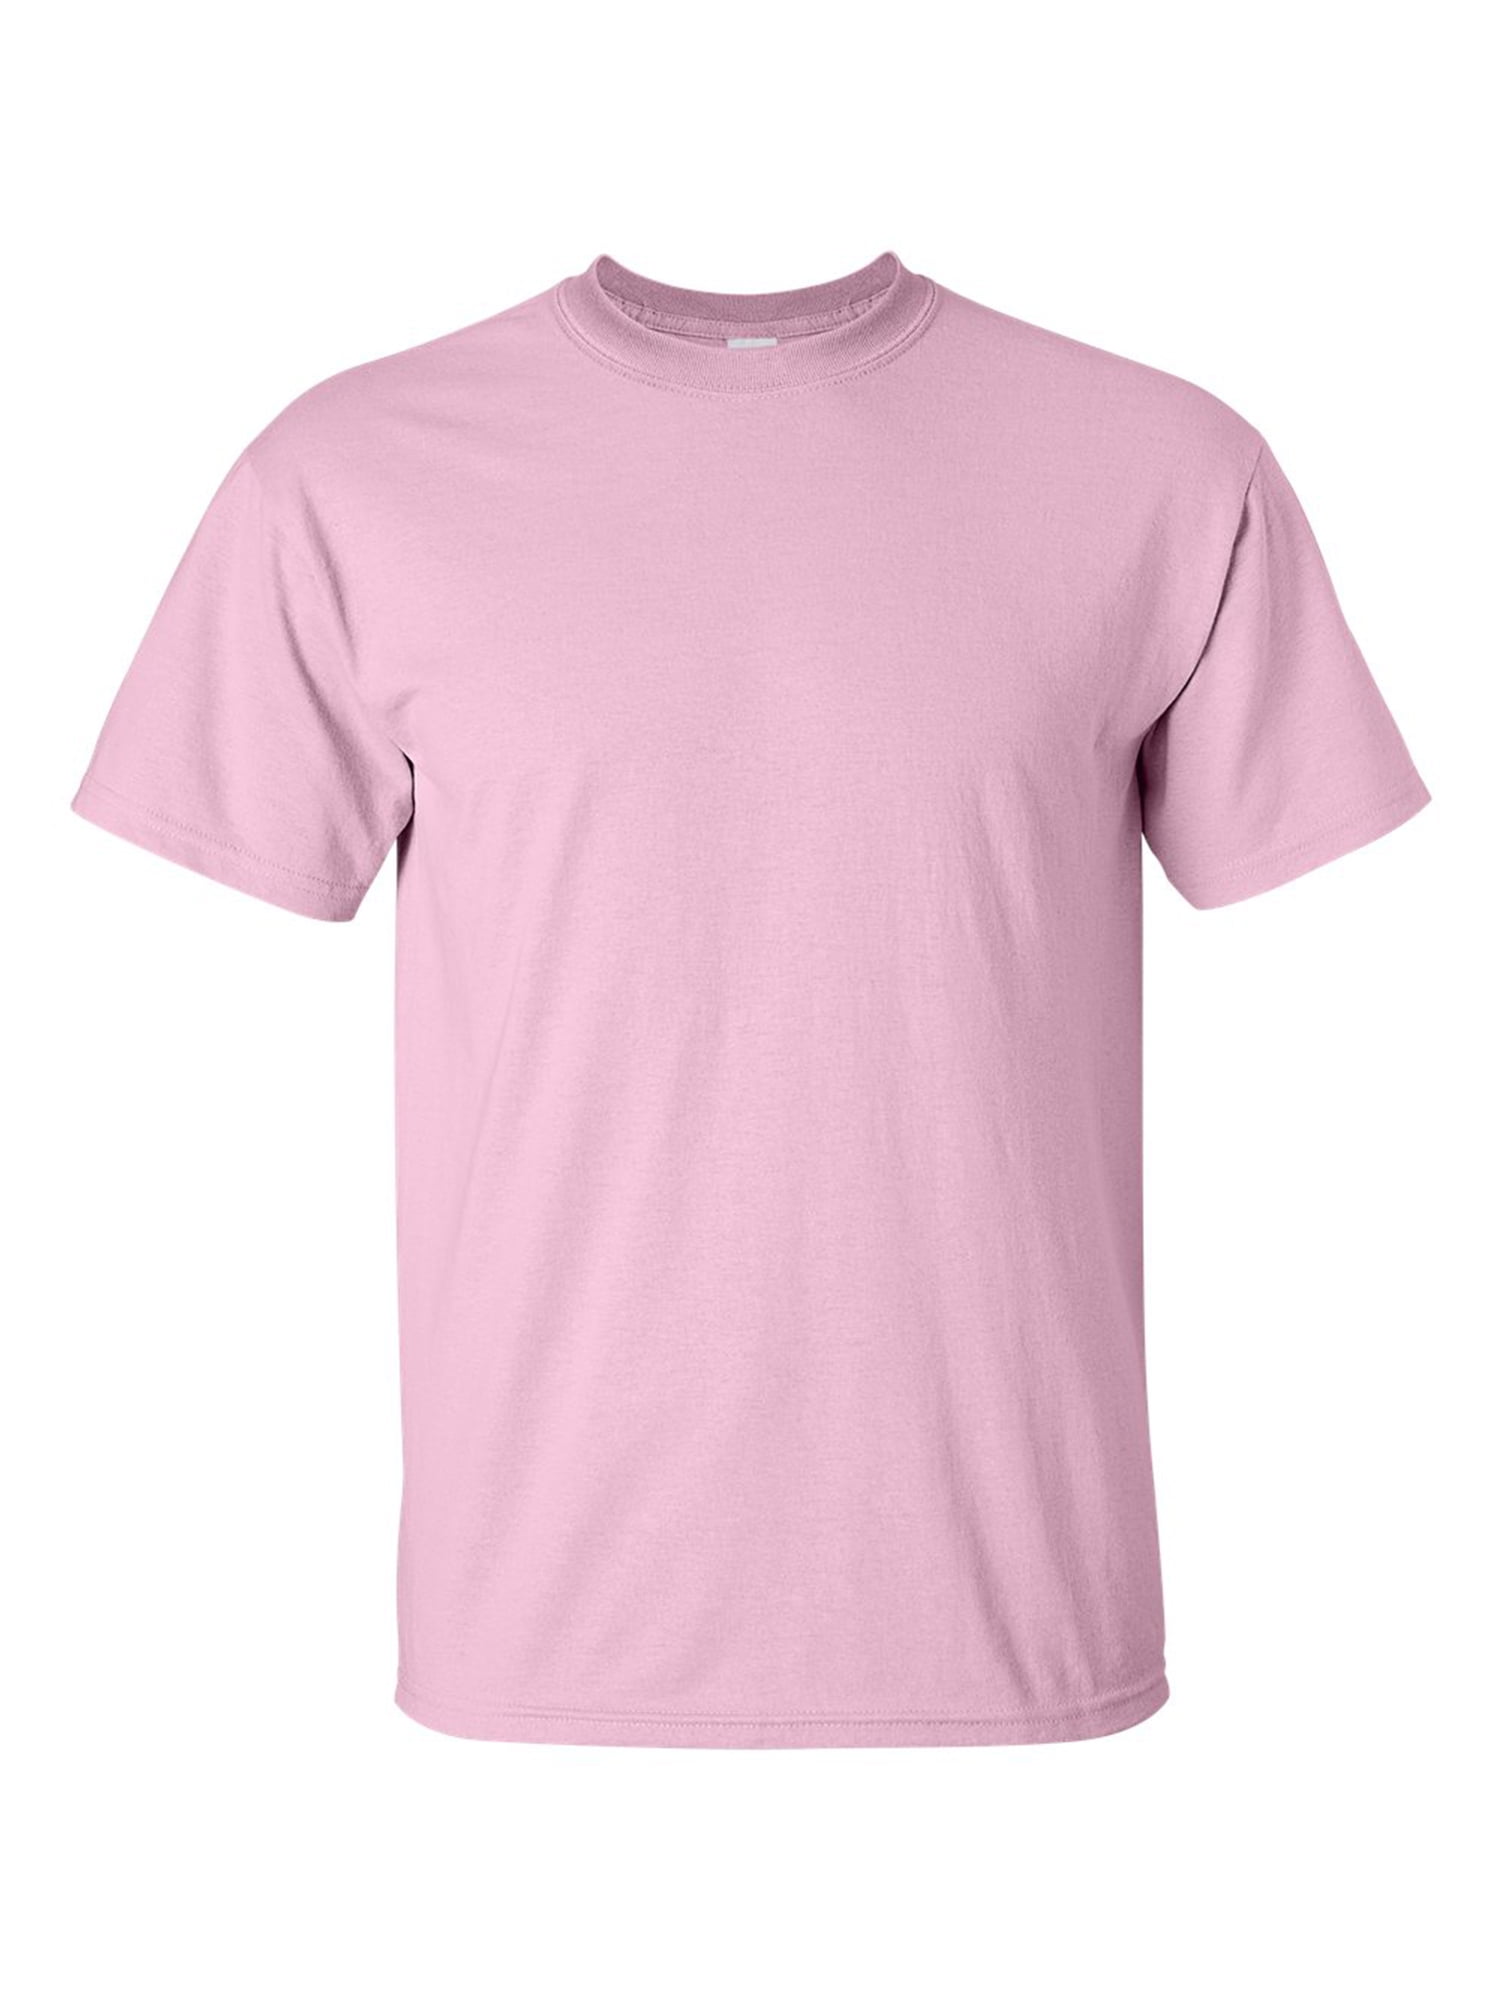 gildan light pink t shirt